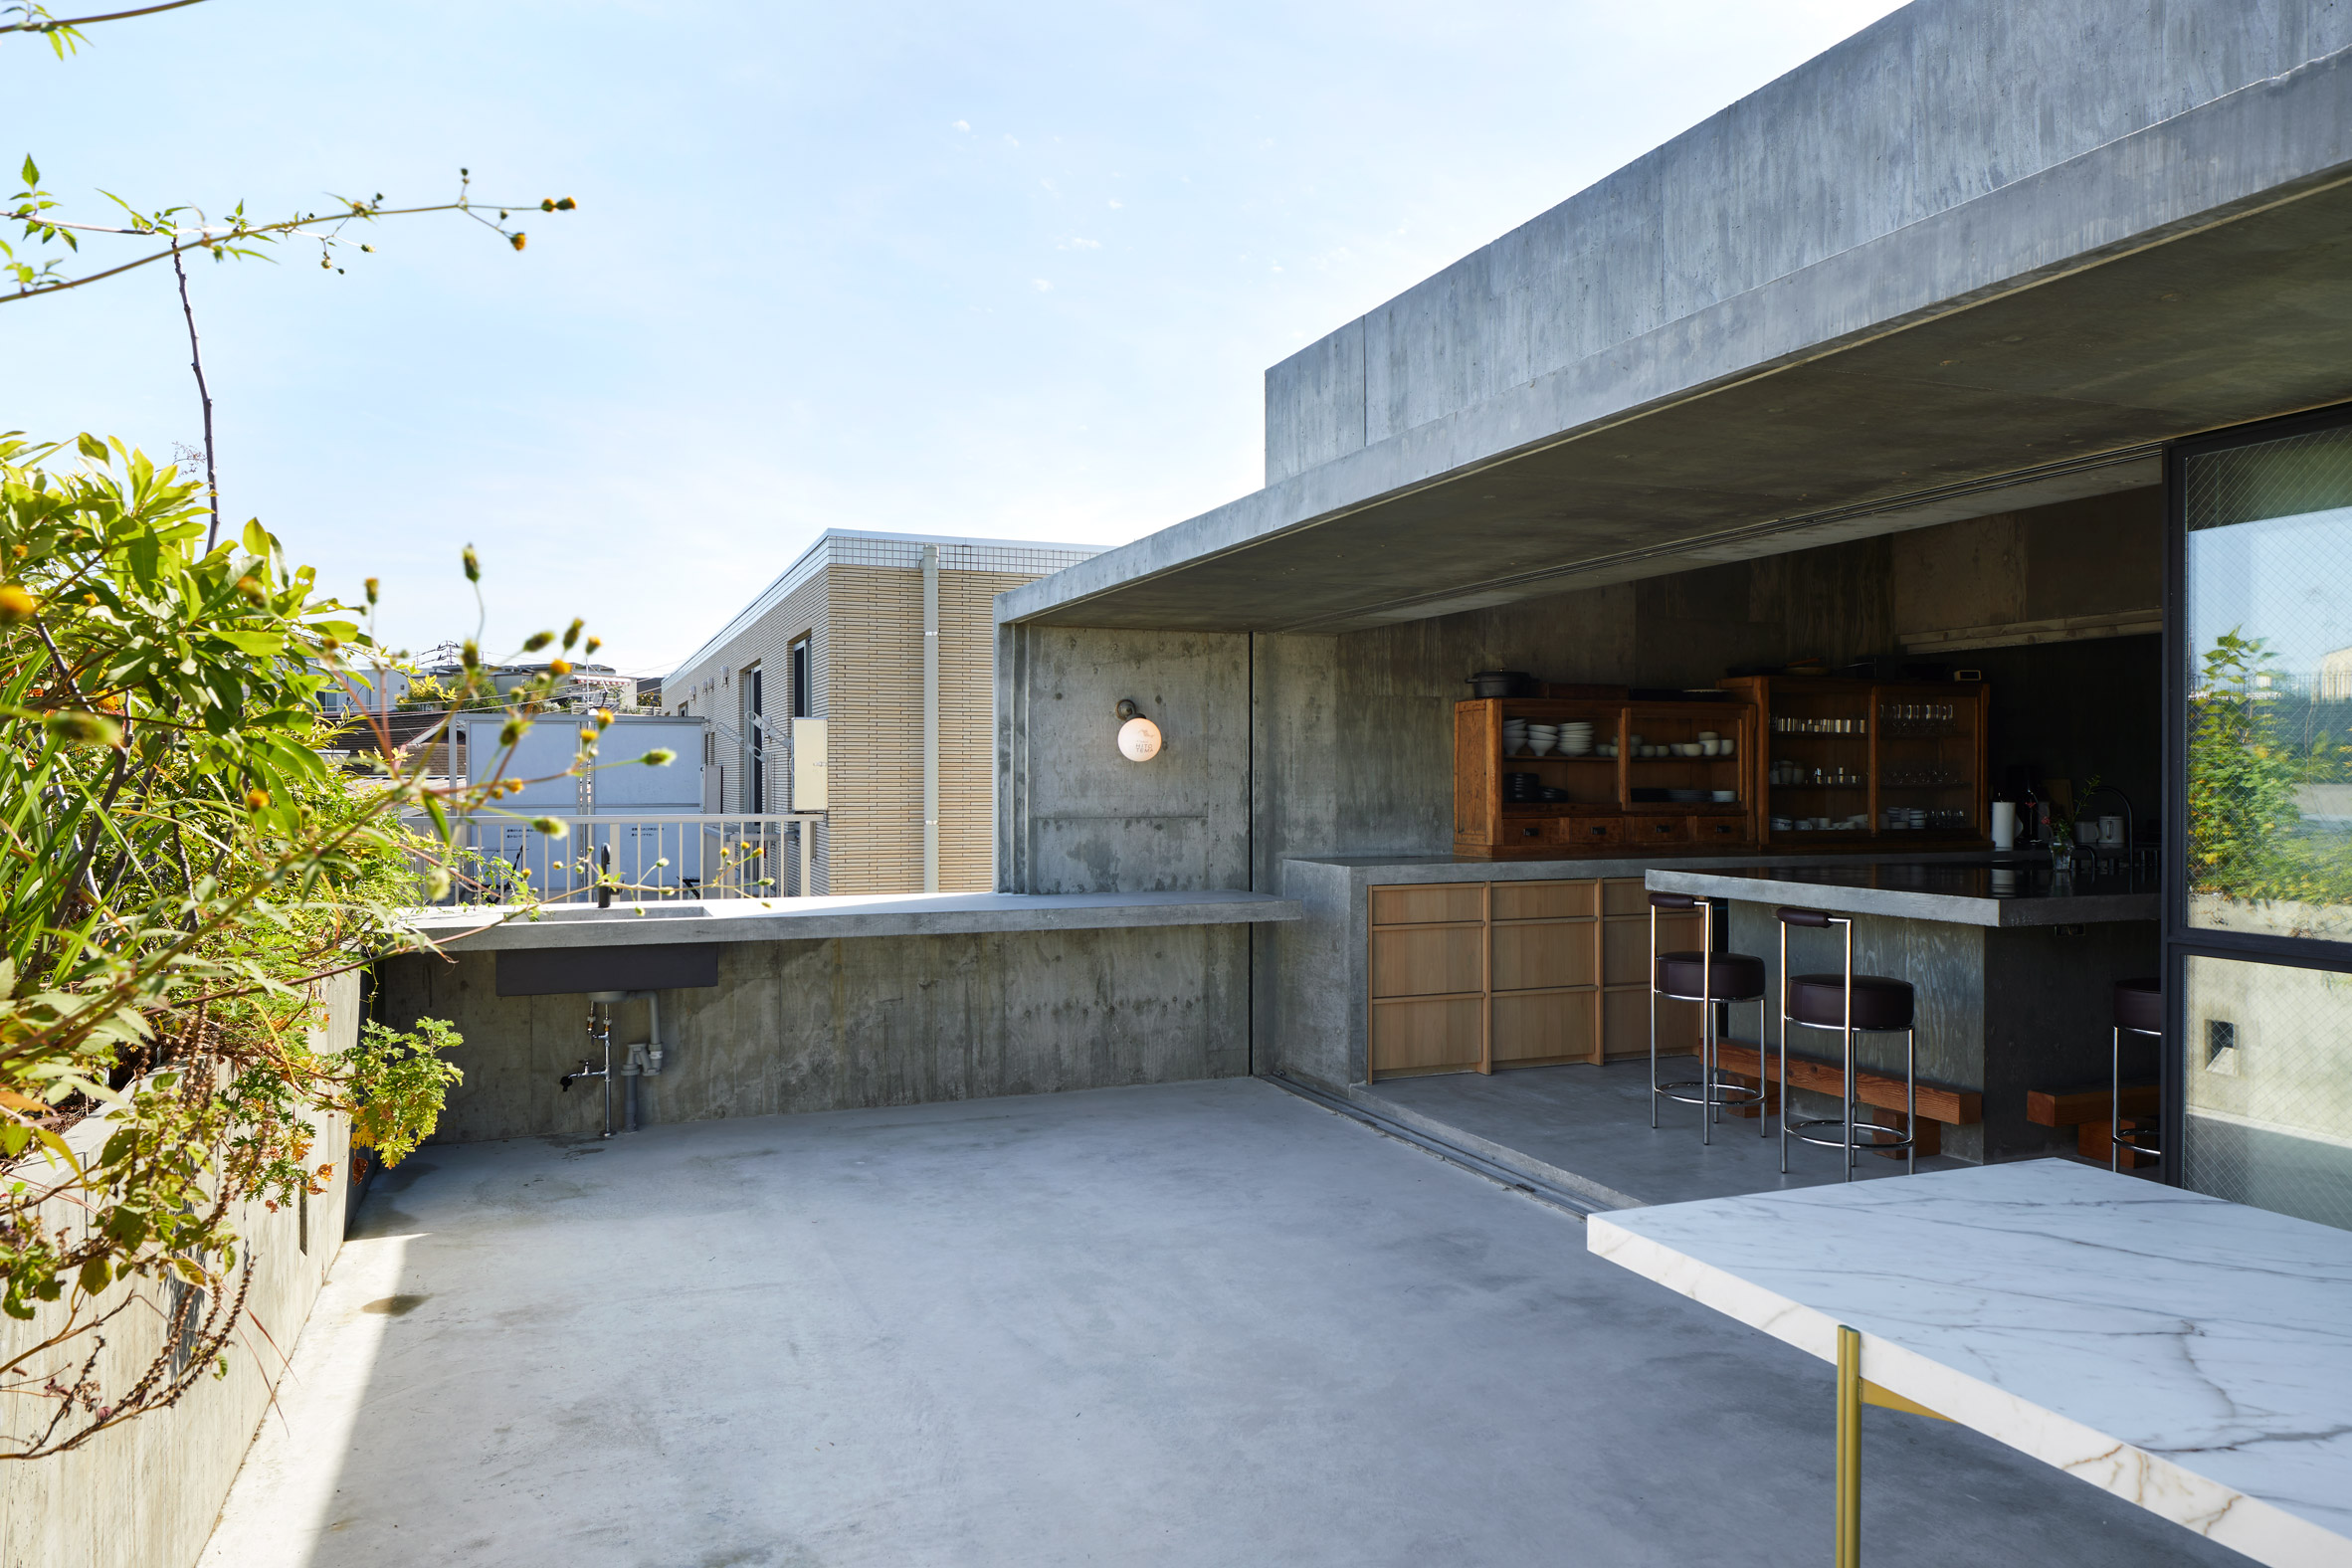 A Japanese restaurant's concrete roof terrace